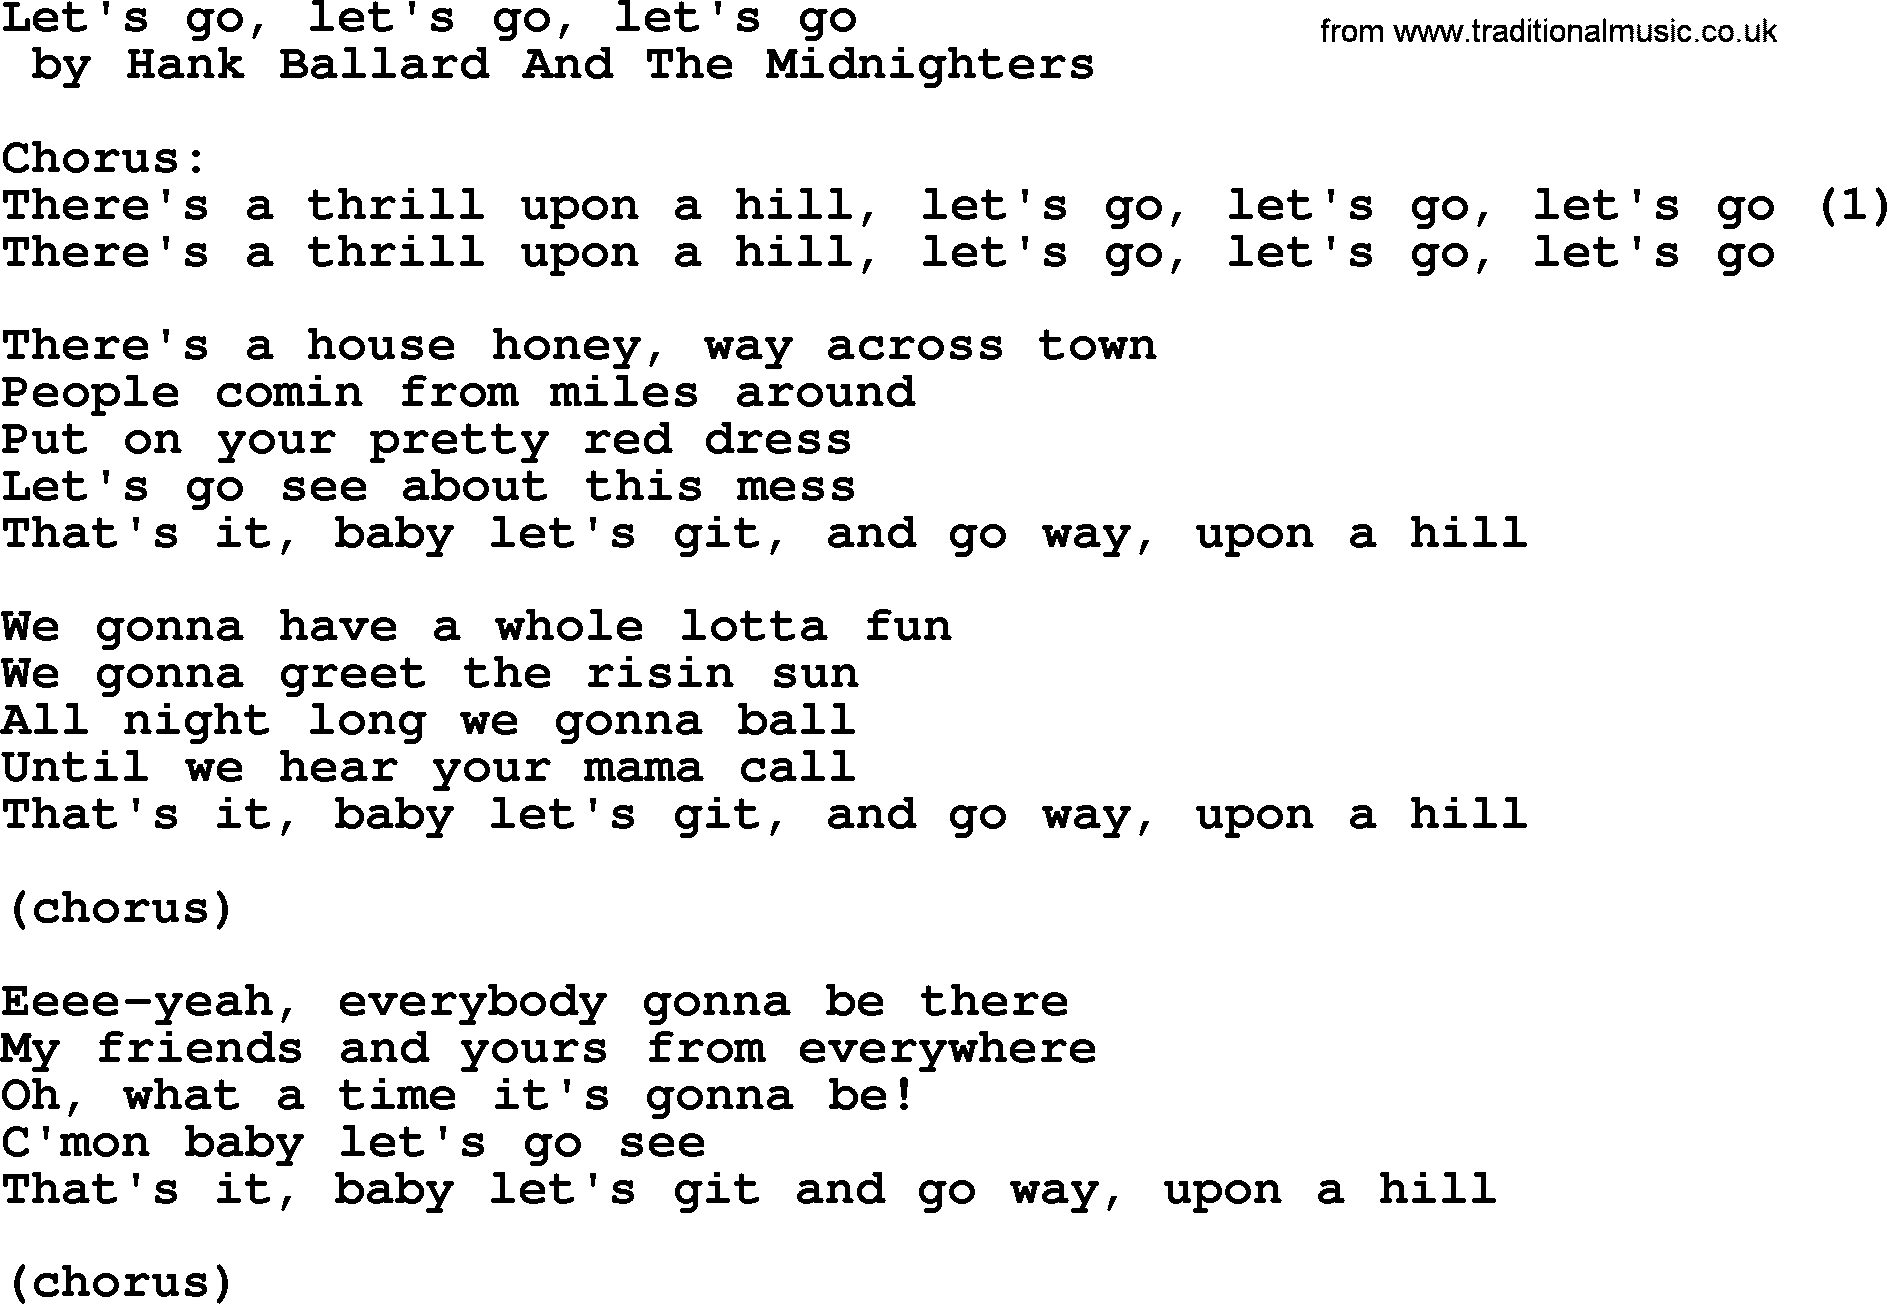 Bruce Springsteen song: Let's Go, Let's Go, Let's Go lyrics